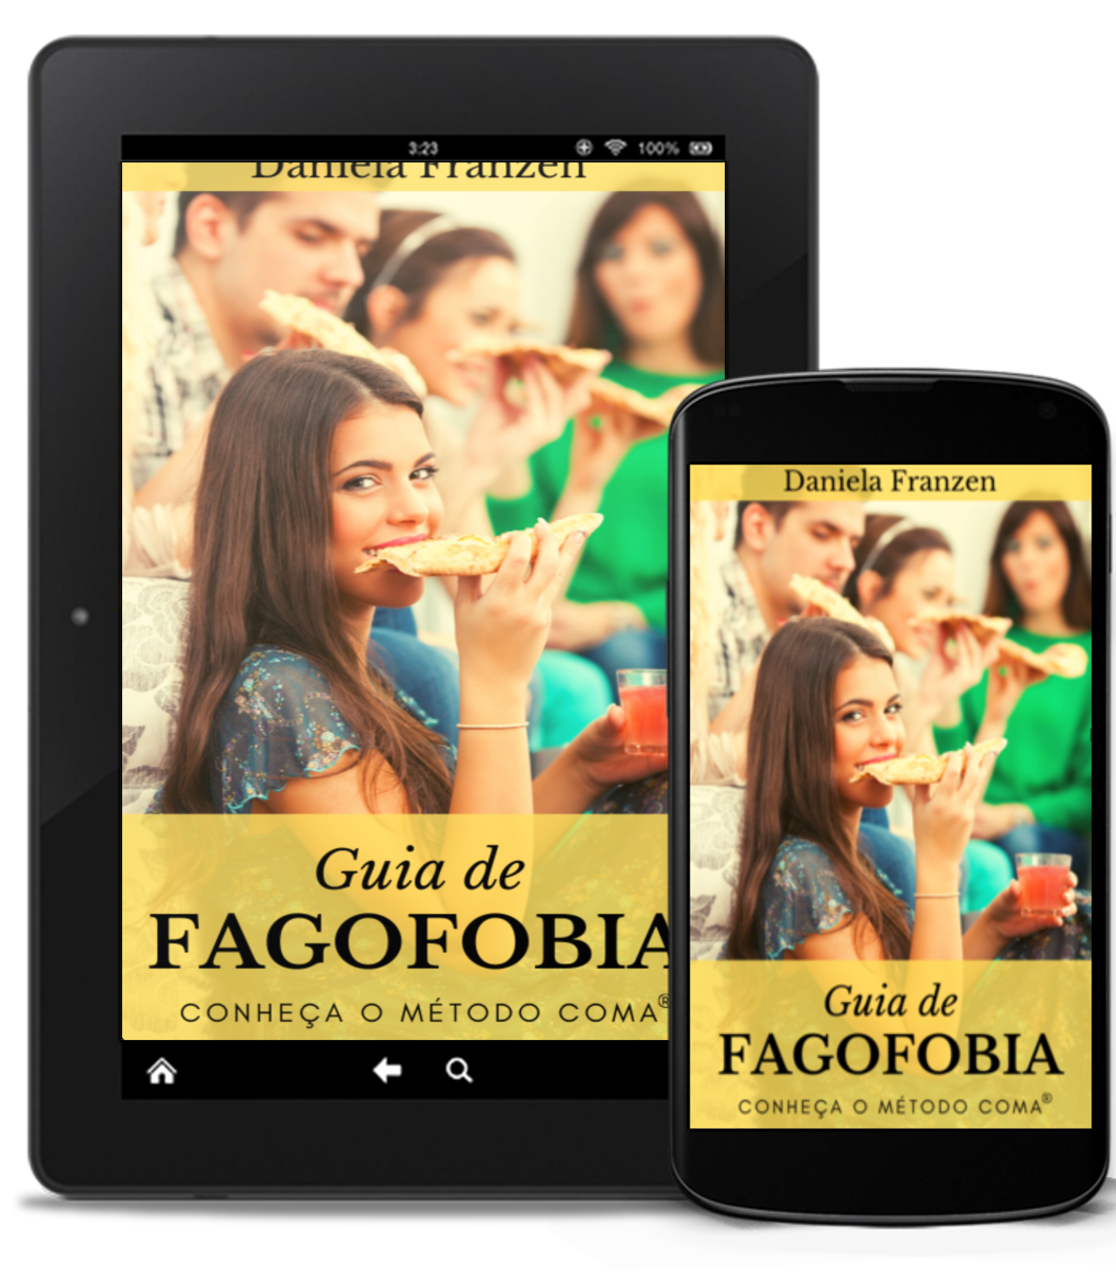 Guia da Fagofobia